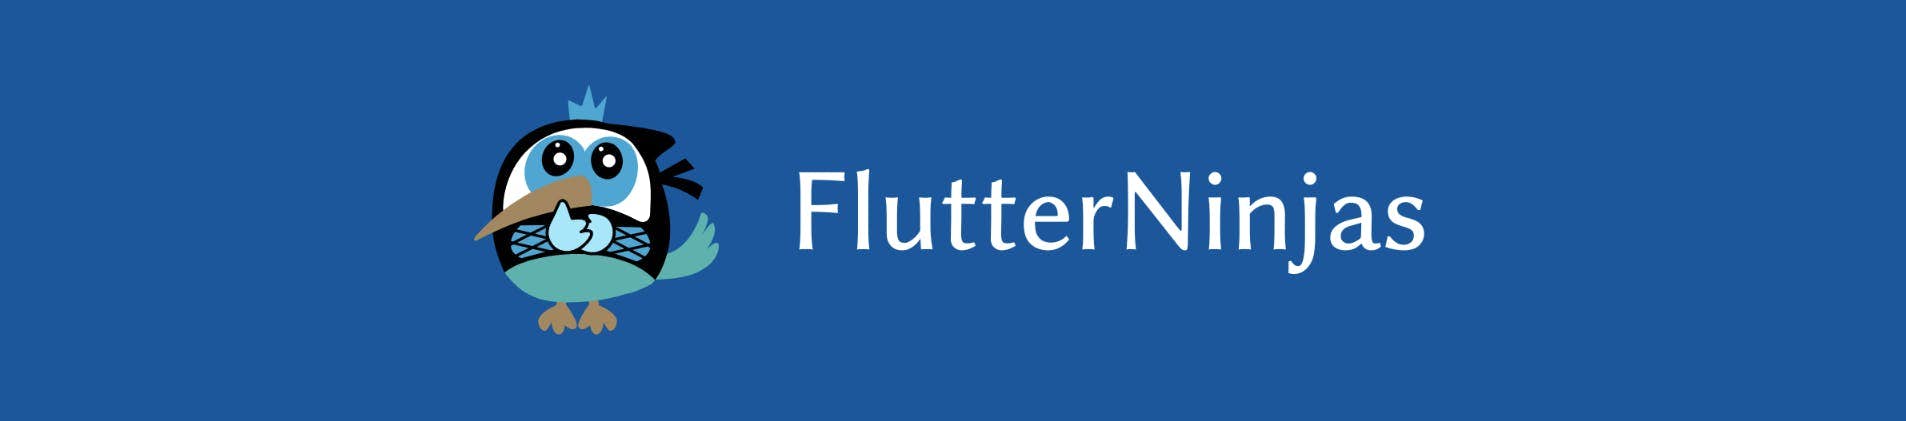 FlutterNinjas - Flutter conference in Japan